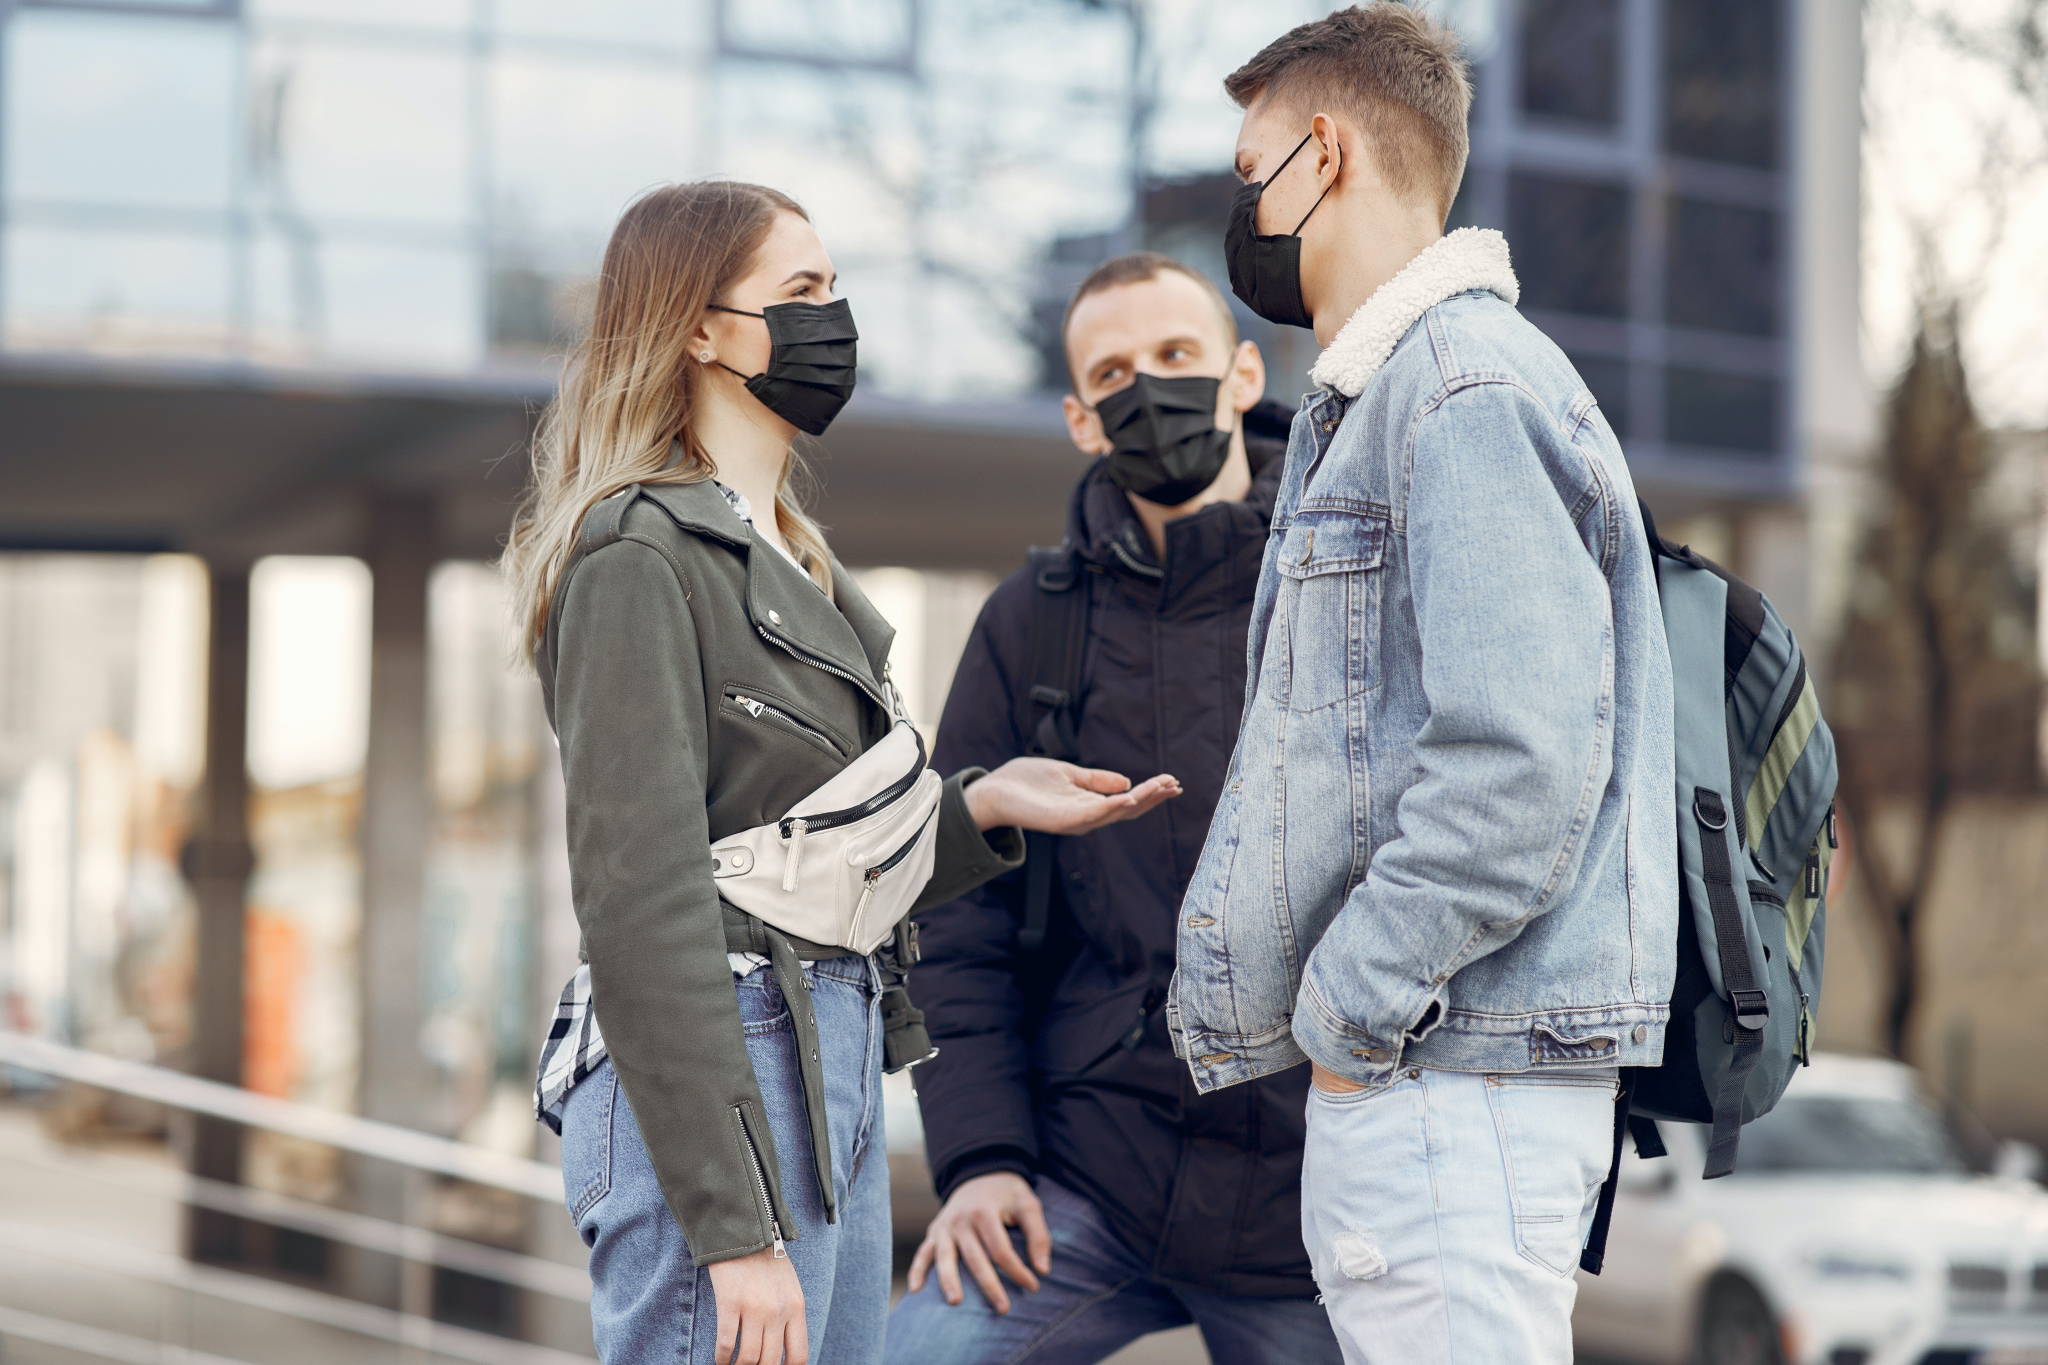 Ношение масок до 2021 года: утверждены новые правила Роспотребнадзора